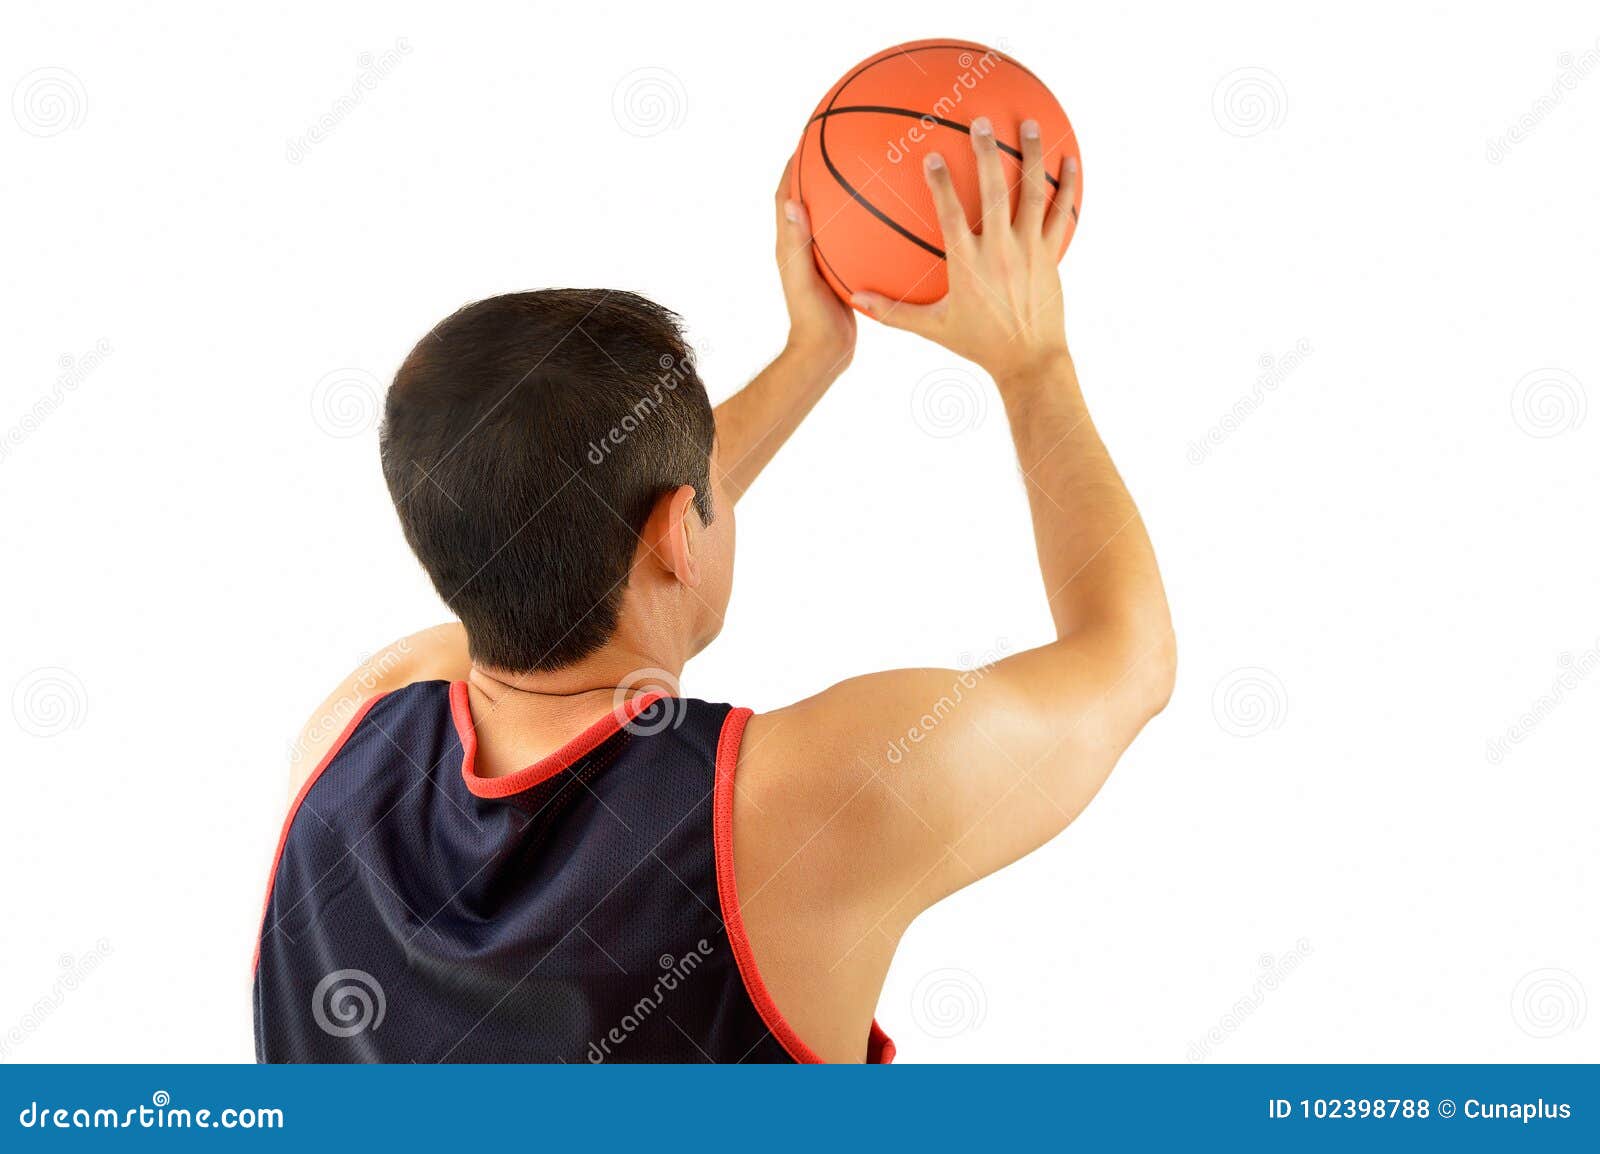 Basketball player posing with ball Stock Photo - Alamy